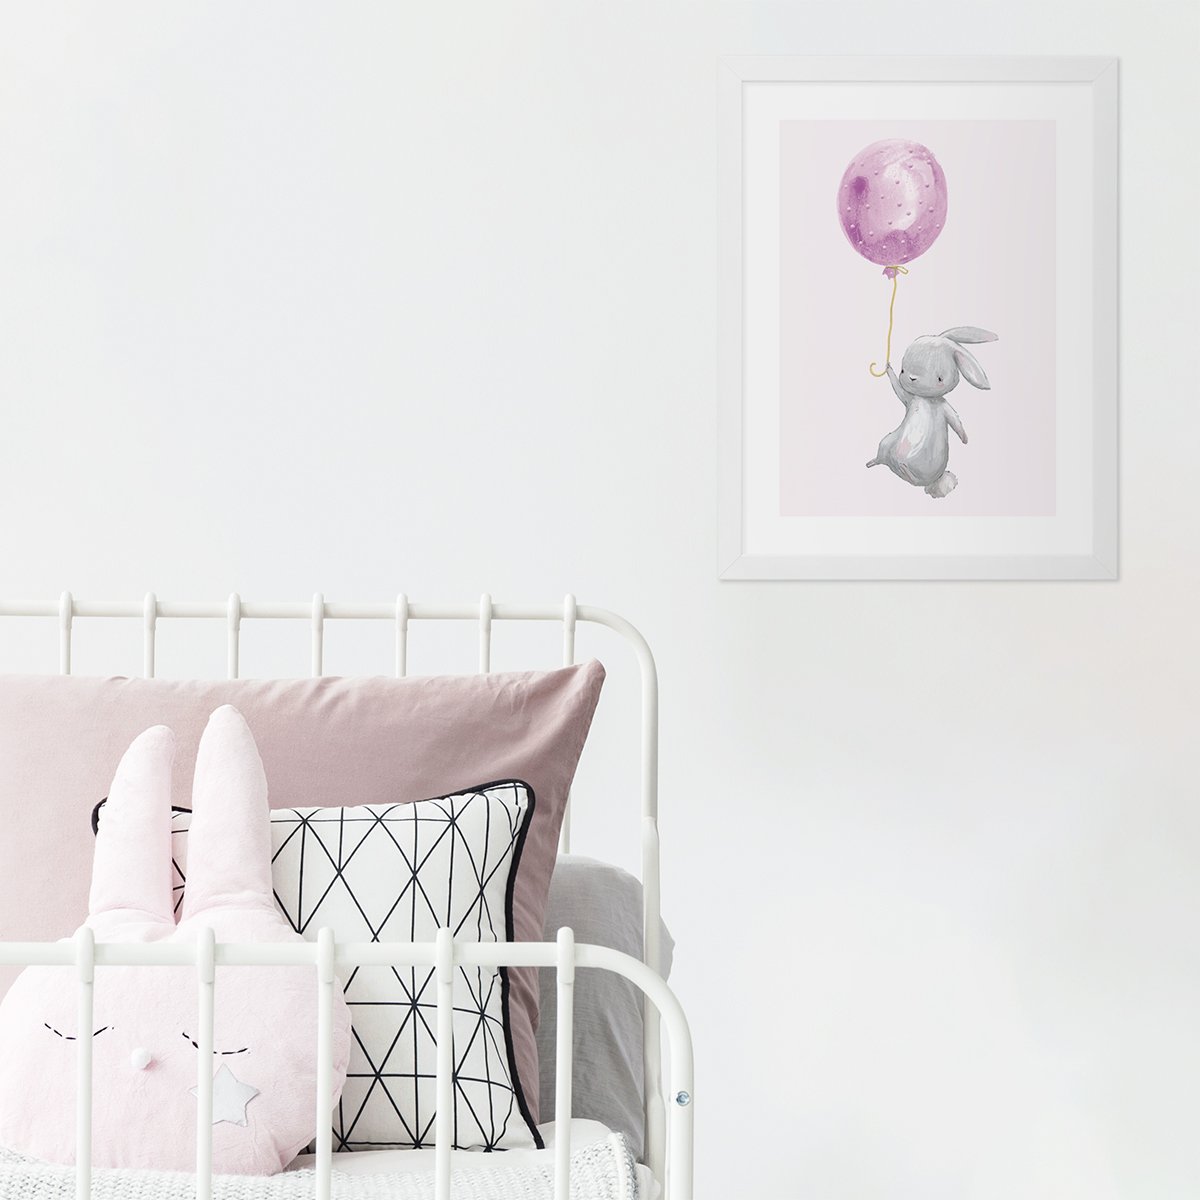 Plakat dla dziewczynki z króliczkiem trzymającym różowy balonik oprawiony w białą ramkę powieszony przy dziecięcym łóżku - pomysł na dekorację ścian pokoju dziewczynki#kolor_rozowy